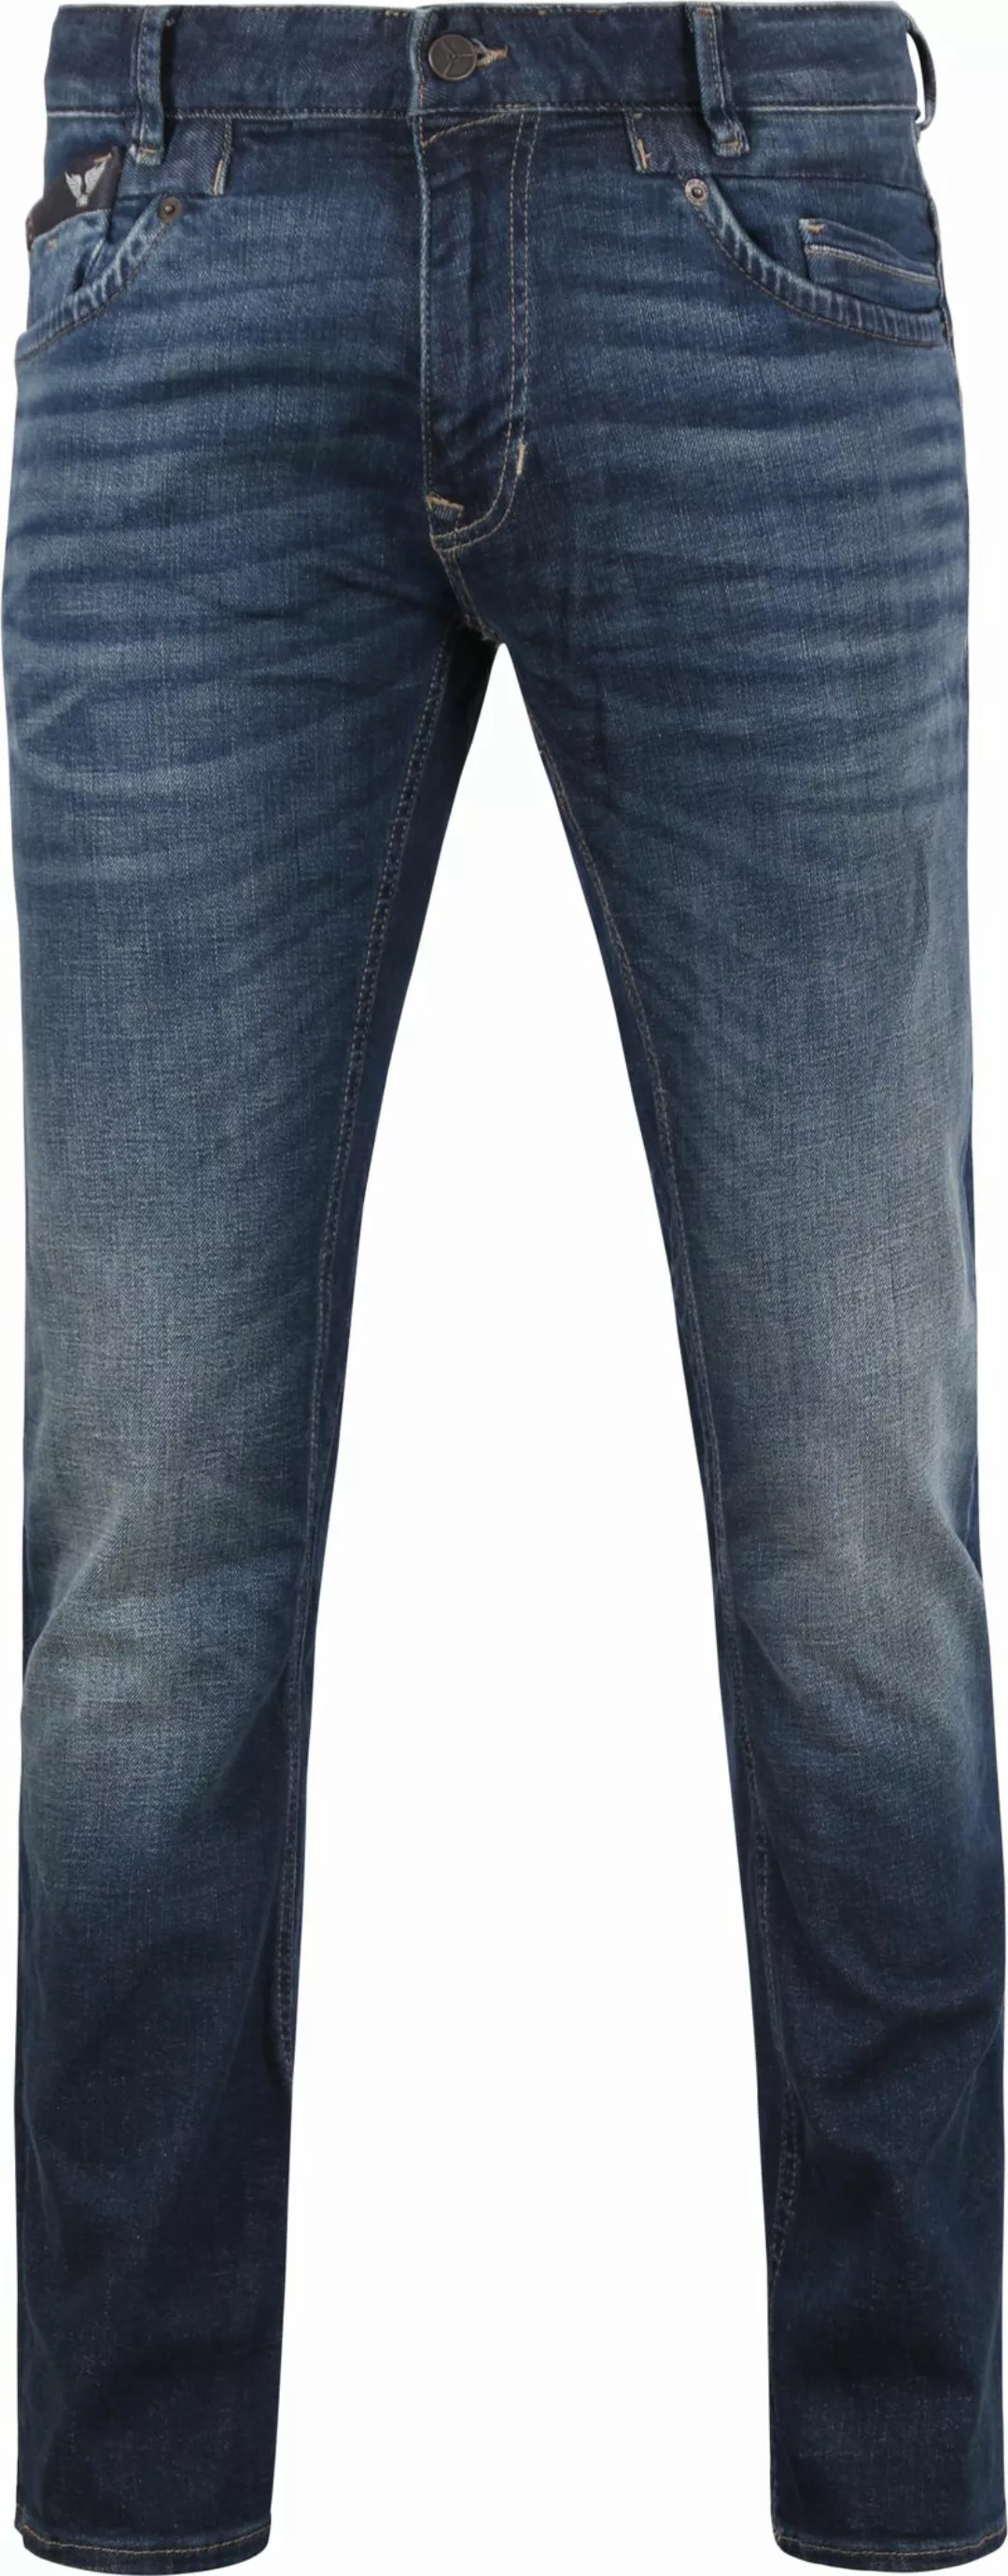 PME Legend Commander 3.0 Jeans Blau DBF - Größe W 36 - L 36 günstig online kaufen